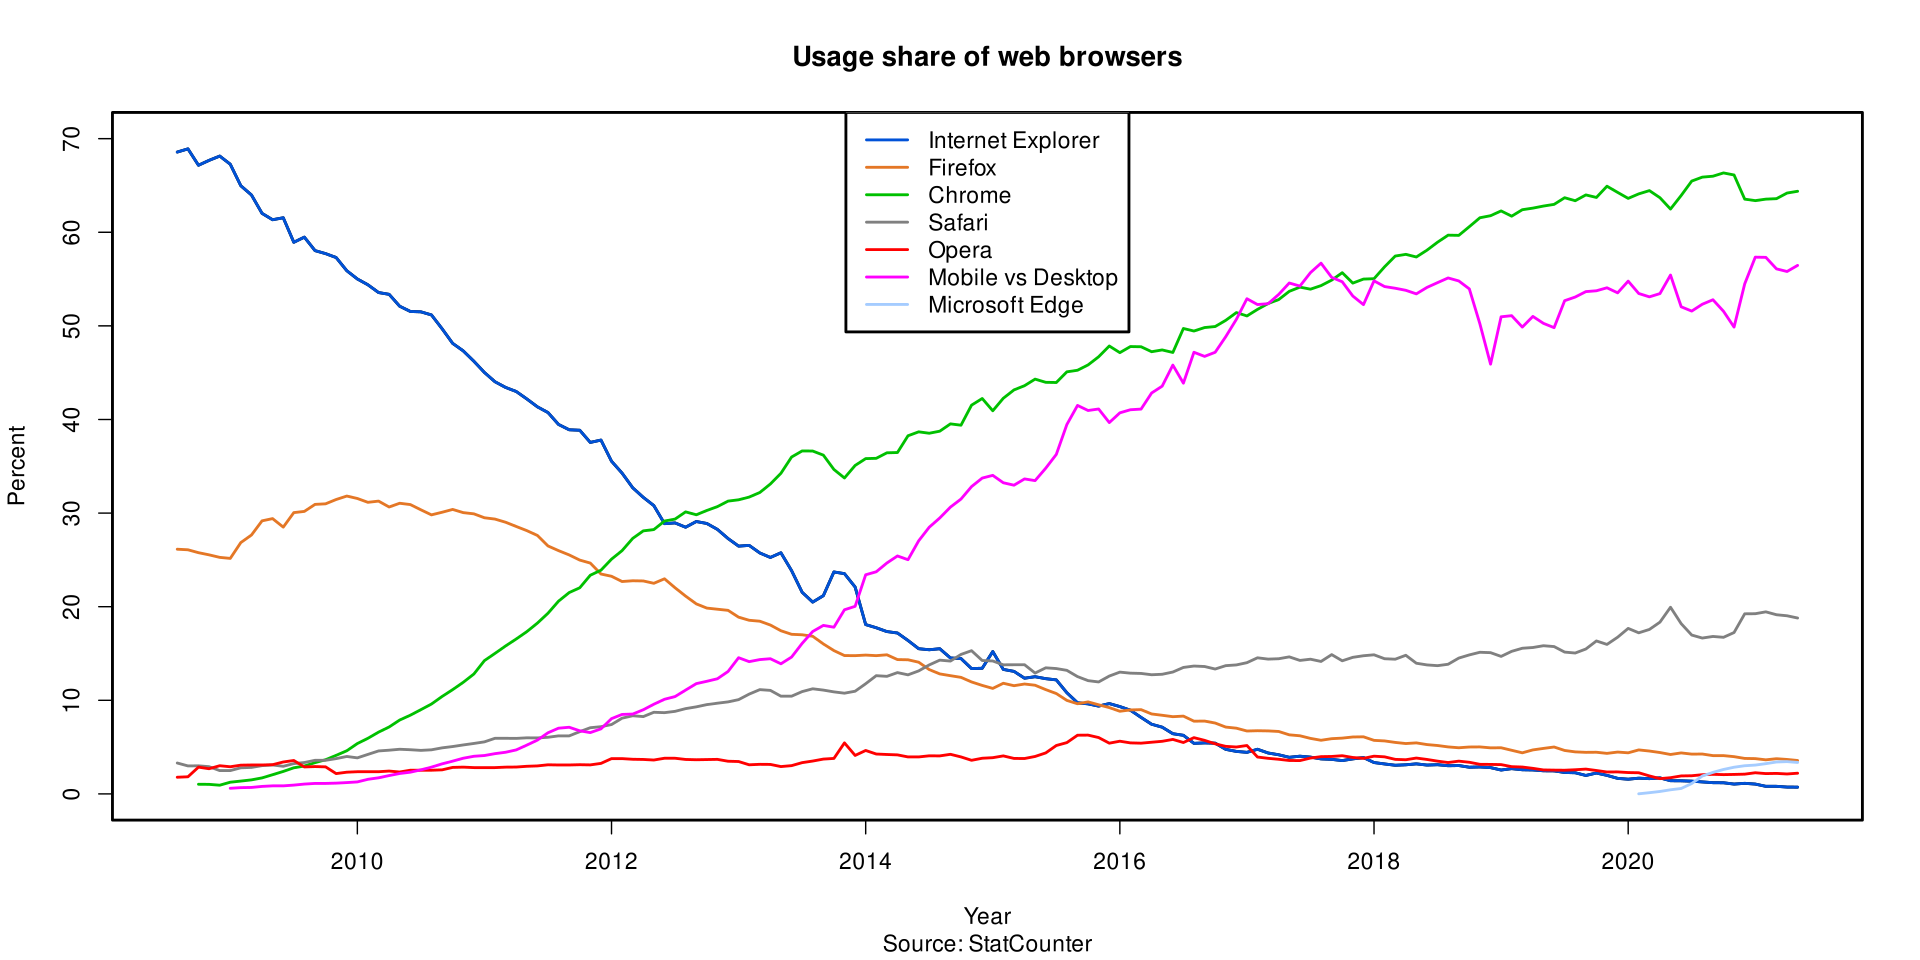 Chrome propose de manière native des moteurs de recherche autre que celui de Google